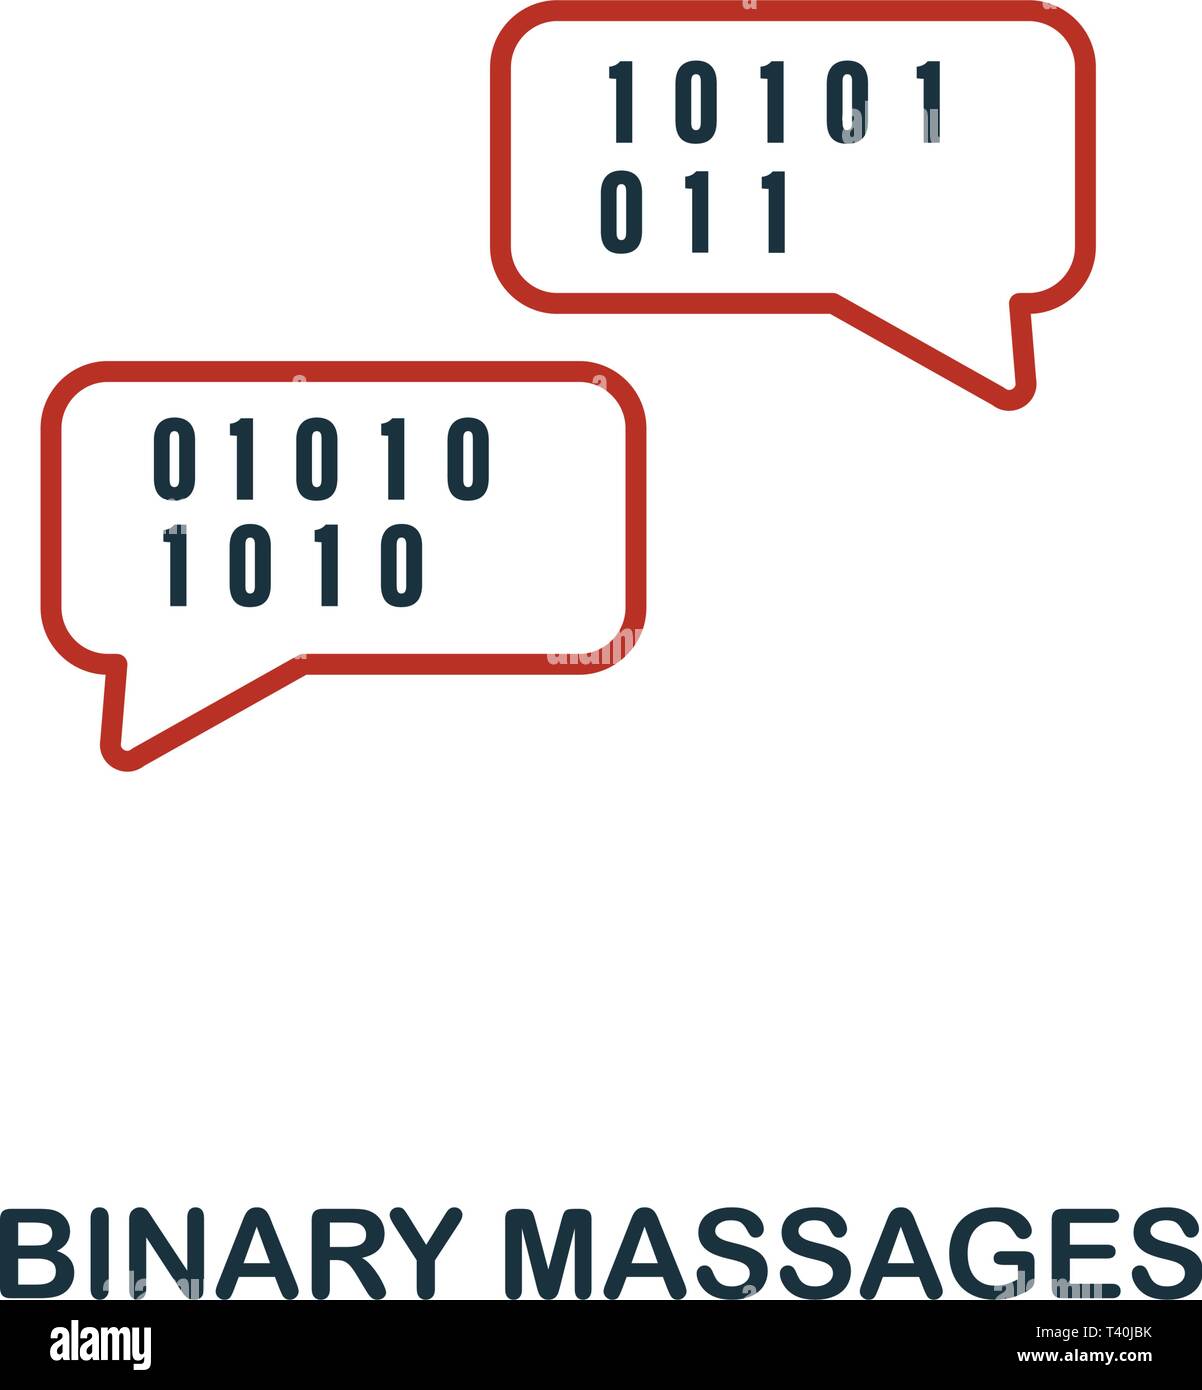 Binäre Massagen Symbol in zwei Farben Design. Rot und Schwarz Stil Elemente von Machine Learning icons Collection. Kreative binäre Massagen Symbol. Für Web Stock Vektor